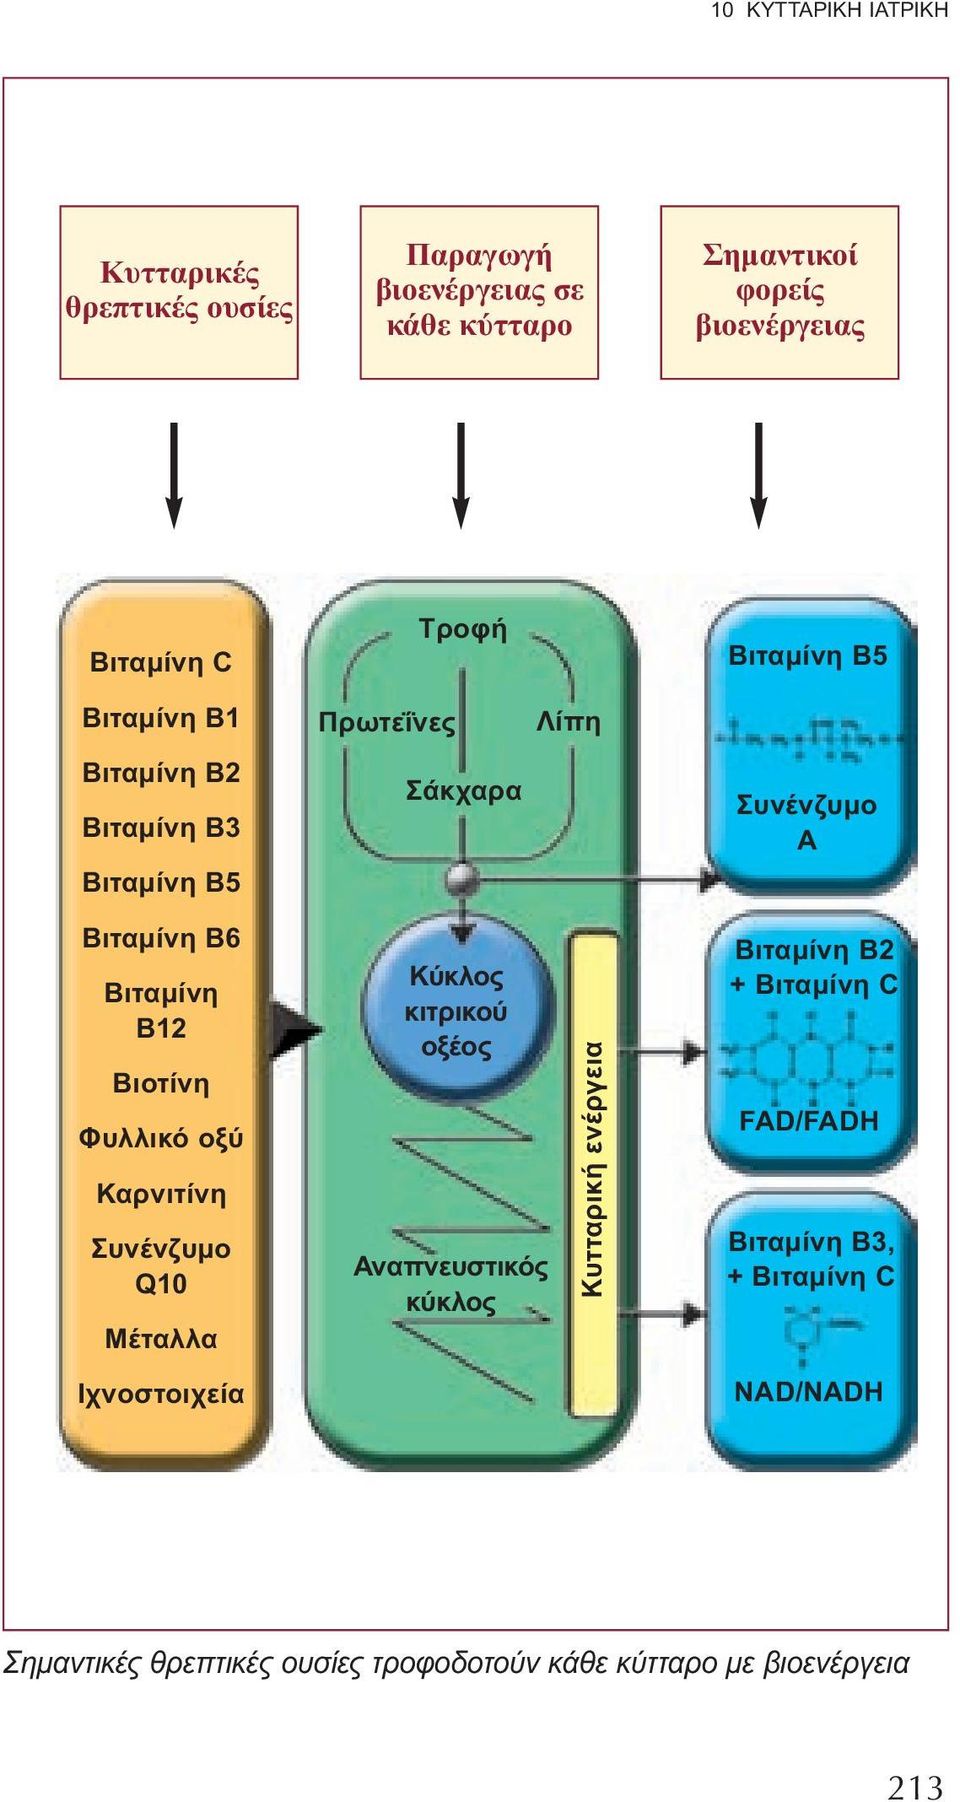 Ιχνοστοιχεία Πρωτεΐνες Τροφή Σάκχαρα Κύκλος κιτρικού οξέος Αναπνευστικός κύκλος Λίπη Κυτταρική ενέργεια Βιταμίνη Β5 Συνένζυμο Α